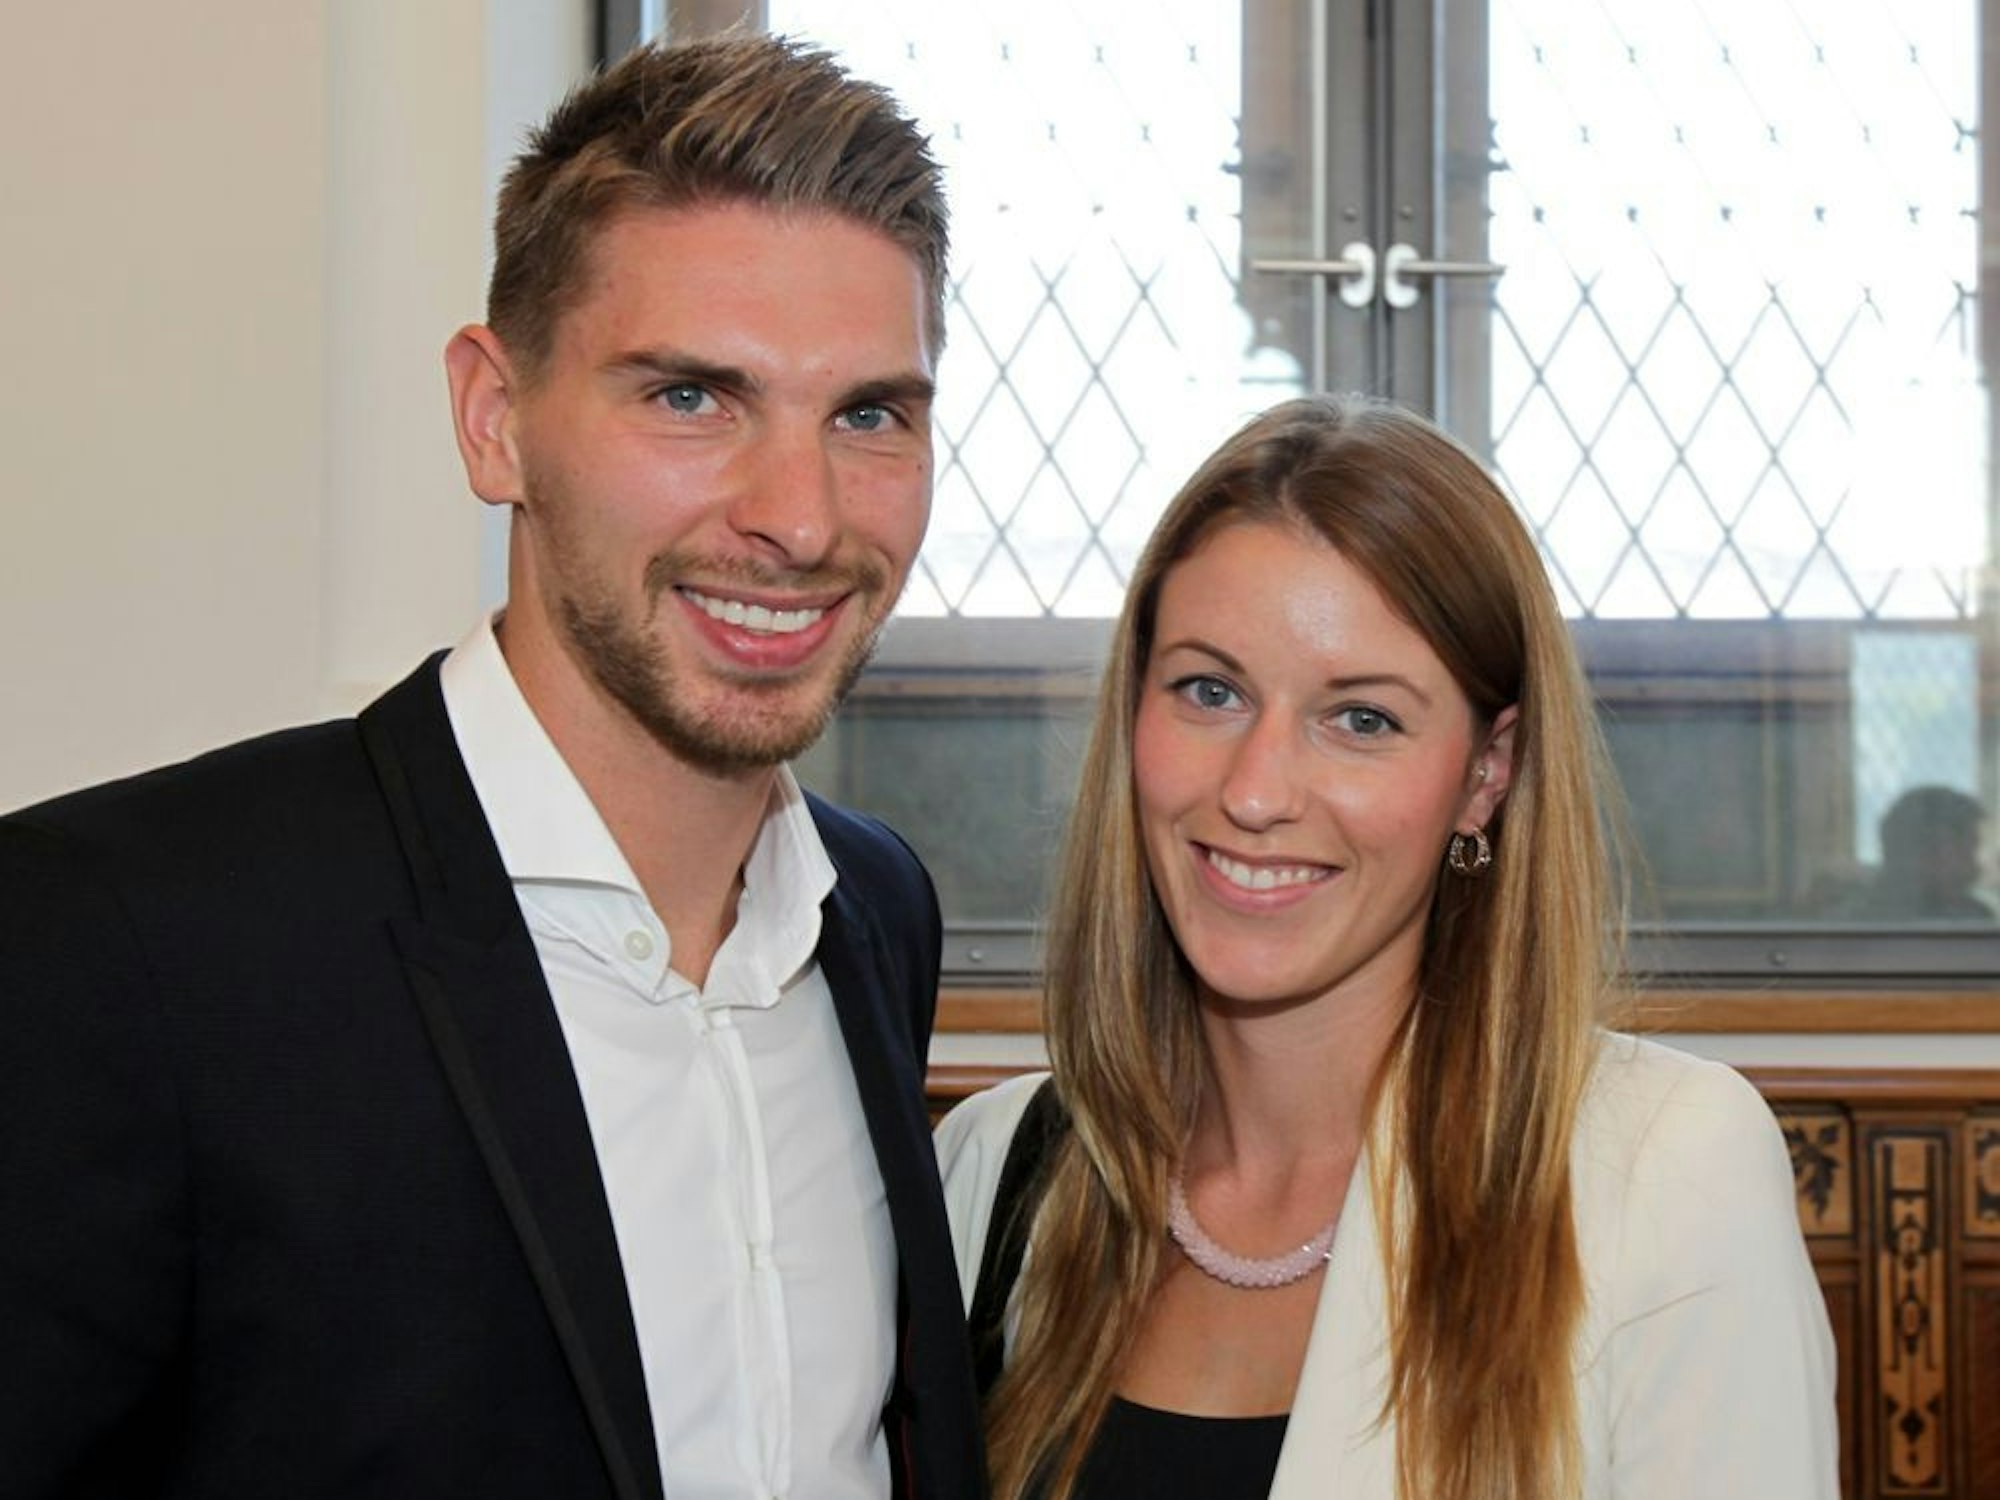 Ron-Robert Zieler und seine Freundin Lisa-Marie im Hannoveraner Rathaus.